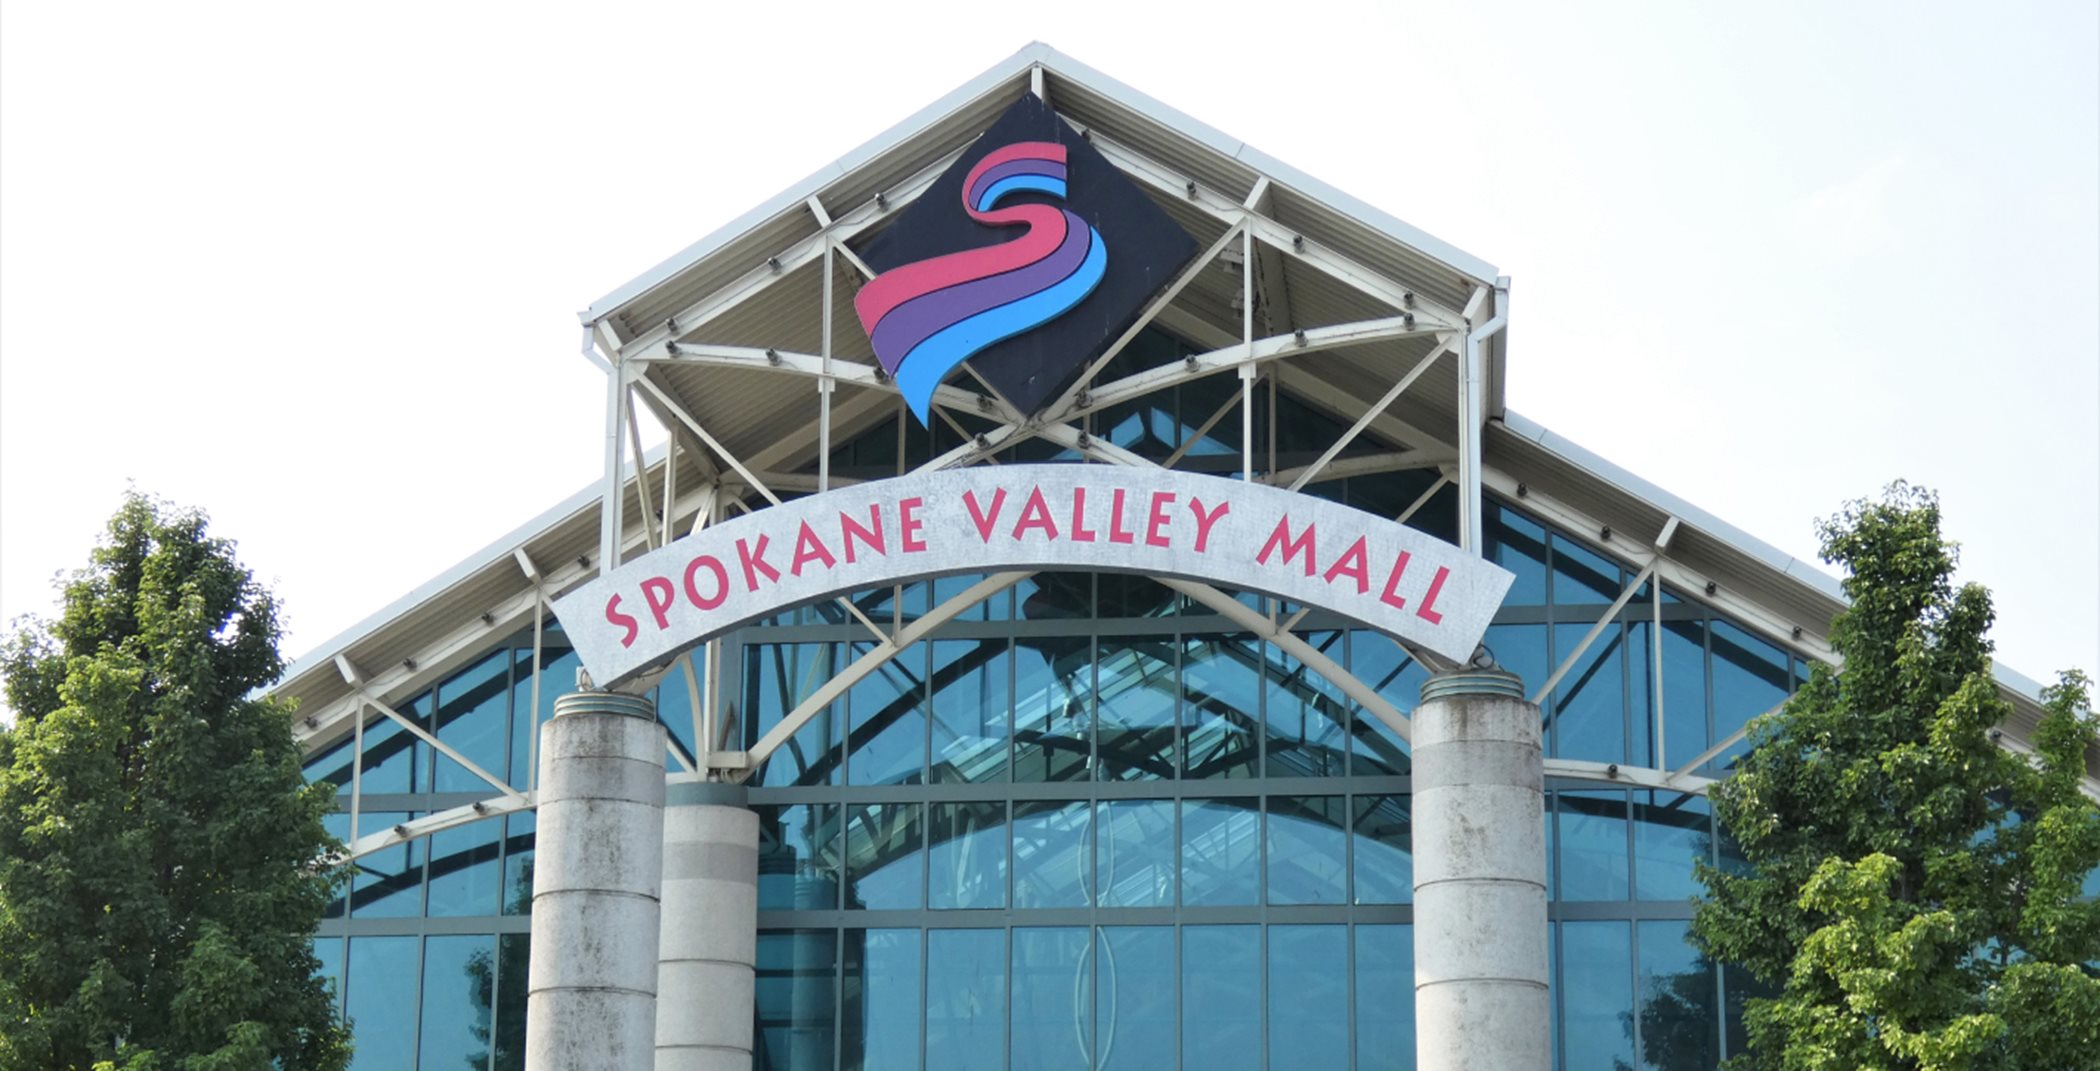 Spokane mall entrance sign